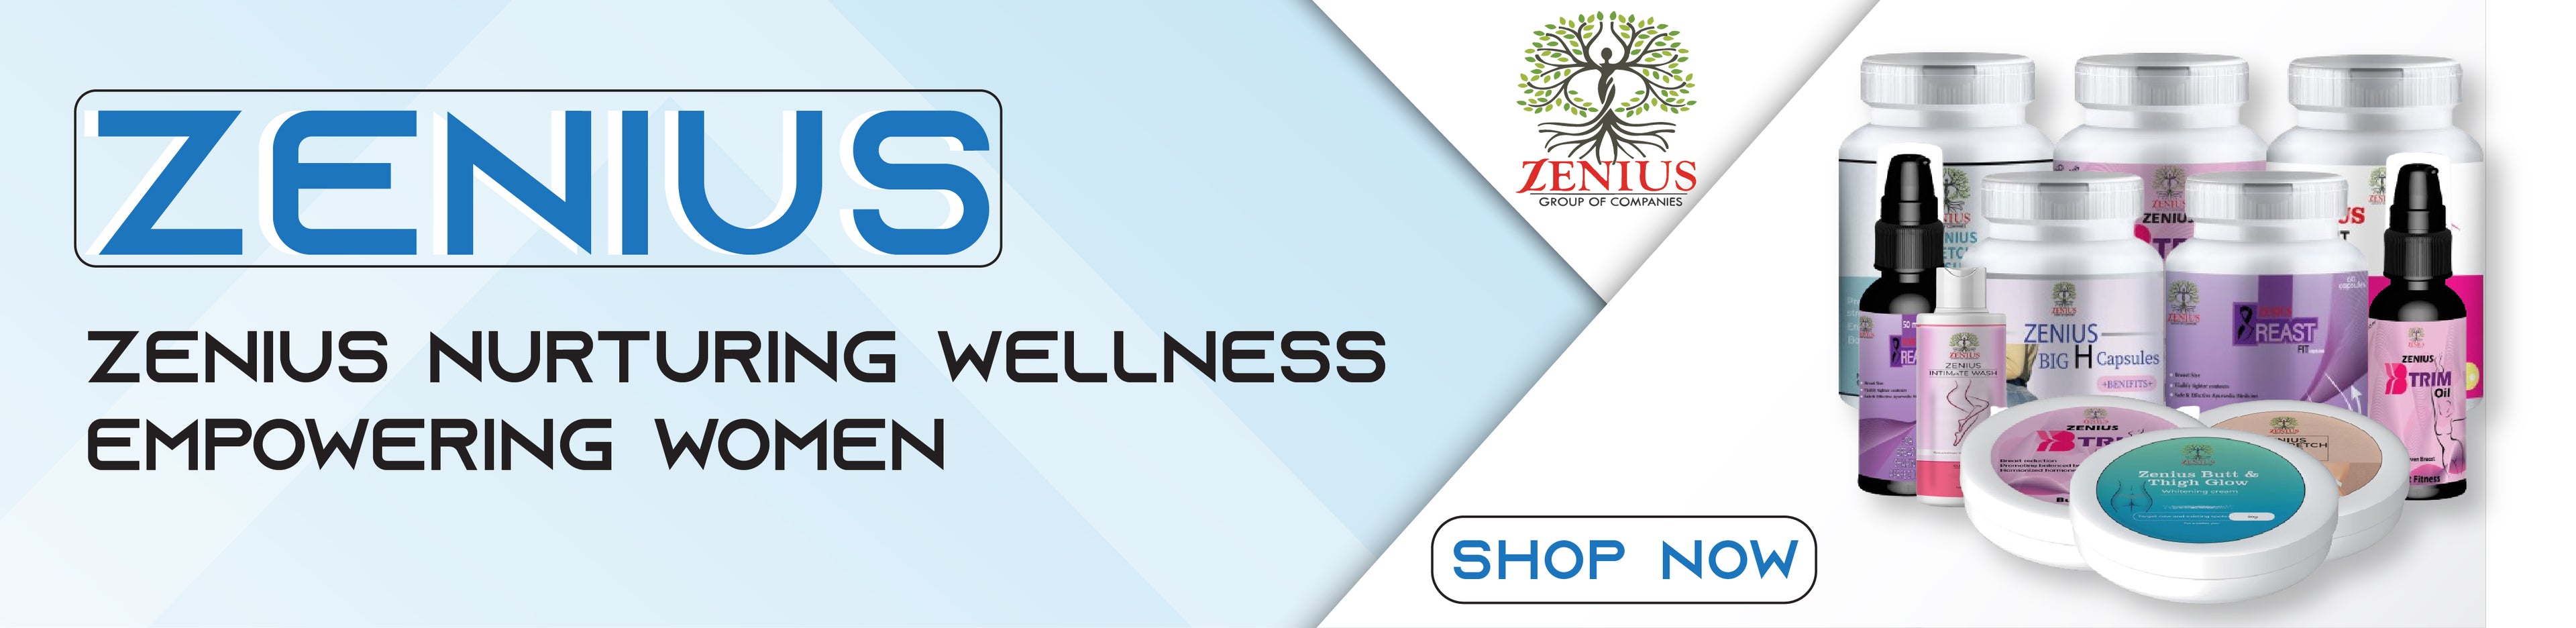 zenius nurturing wellness